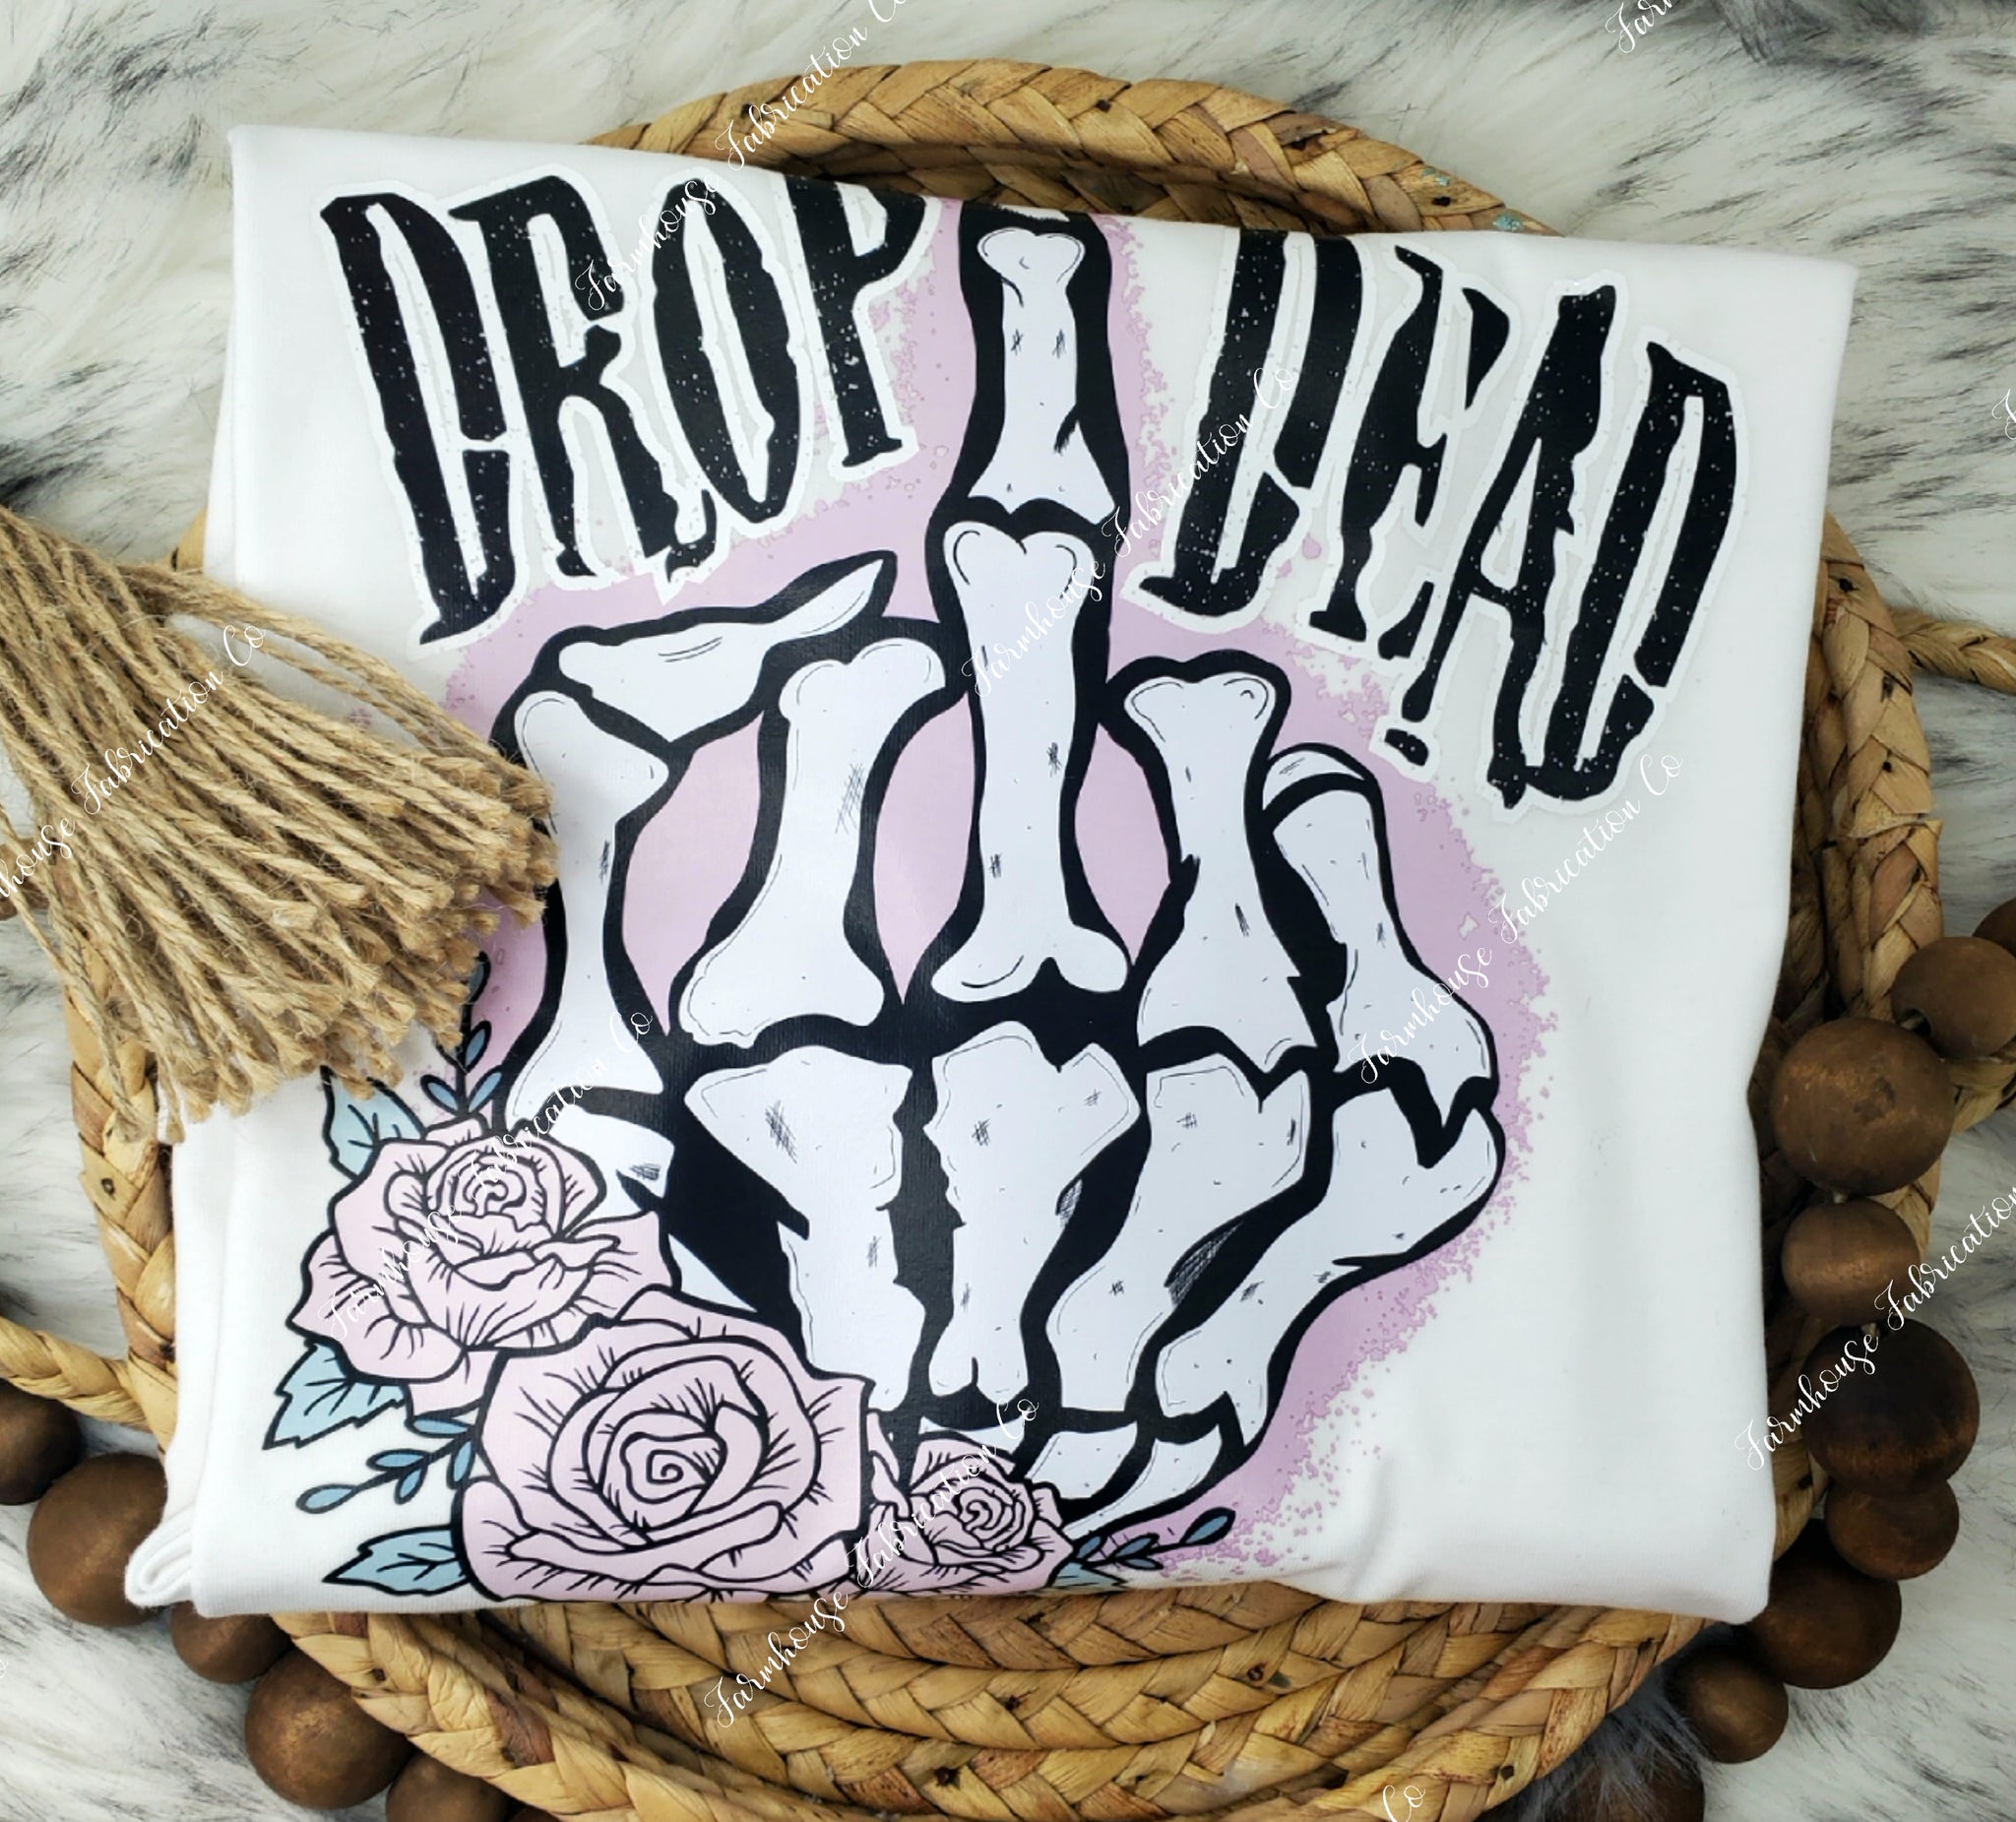 RTS LARGE Drop Dead Middle Finger Floral White Unisex T-shirt